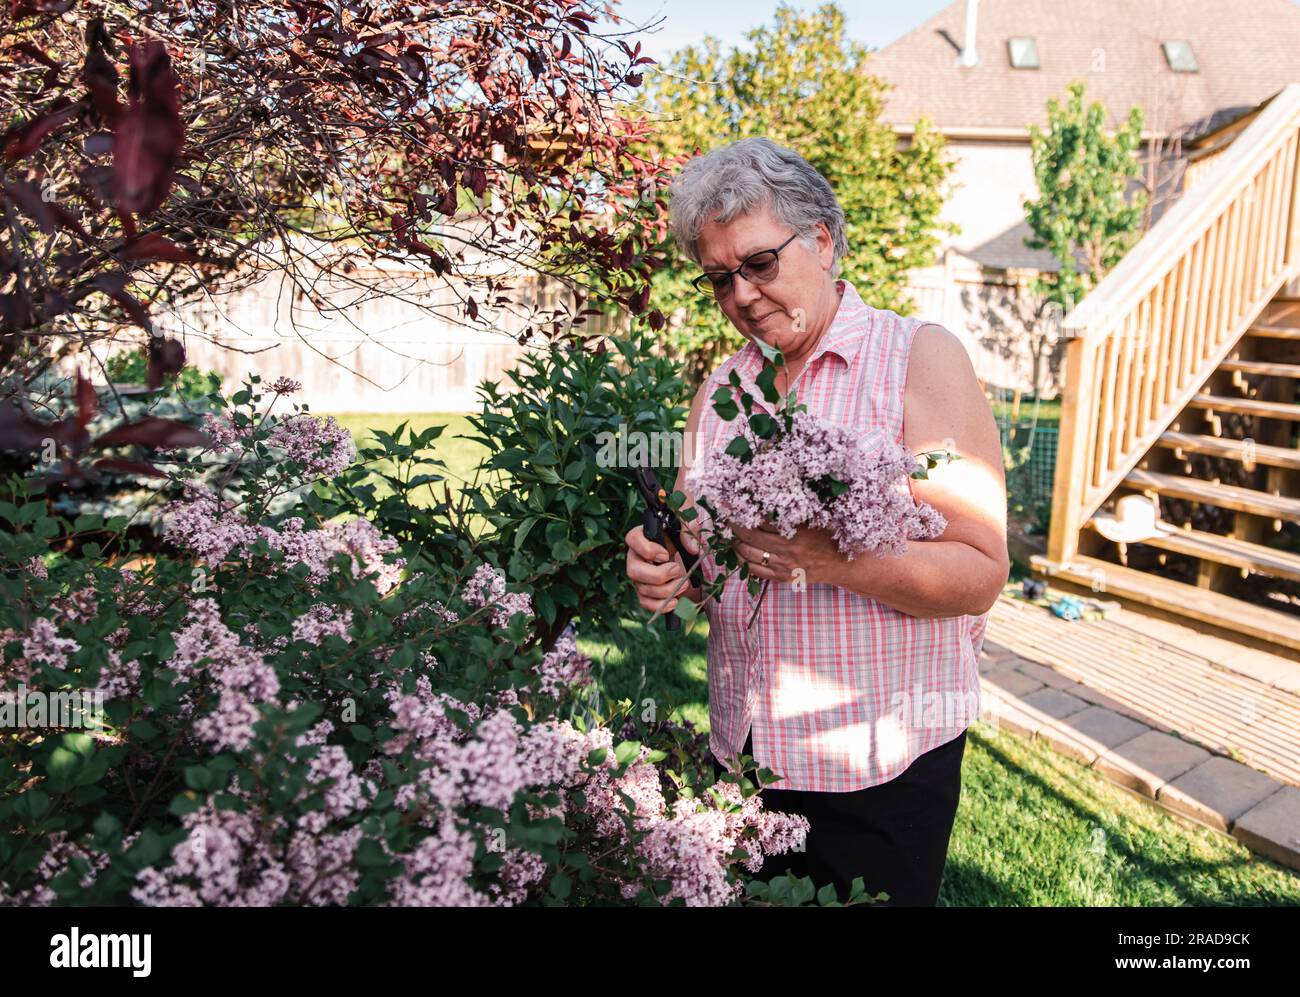 Ältere Frau schneidet Fliederblüten von Fliederstrauch mit Scheren ab. Stockfoto